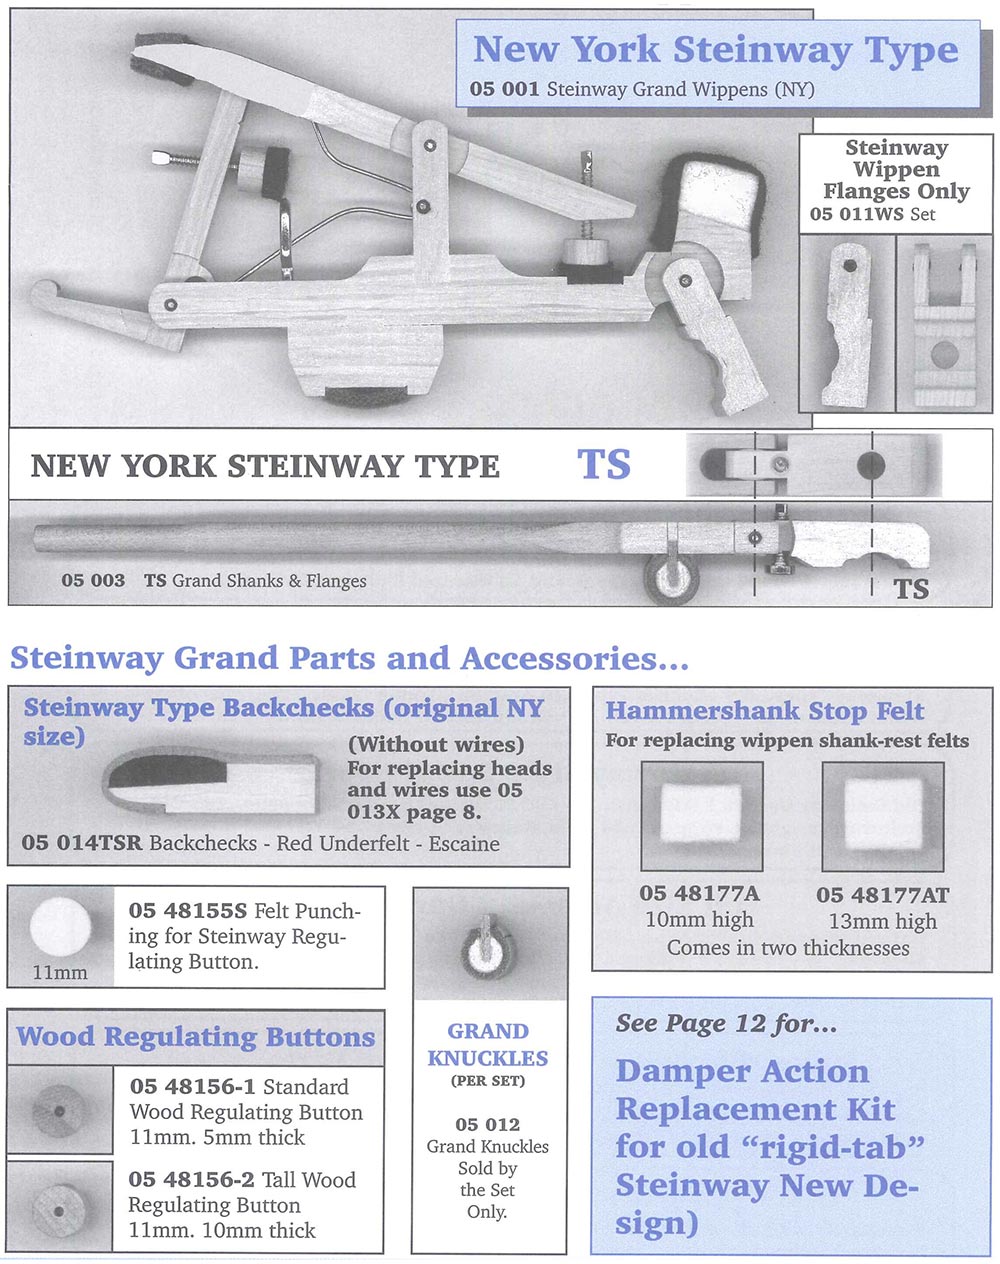 New York Steinway